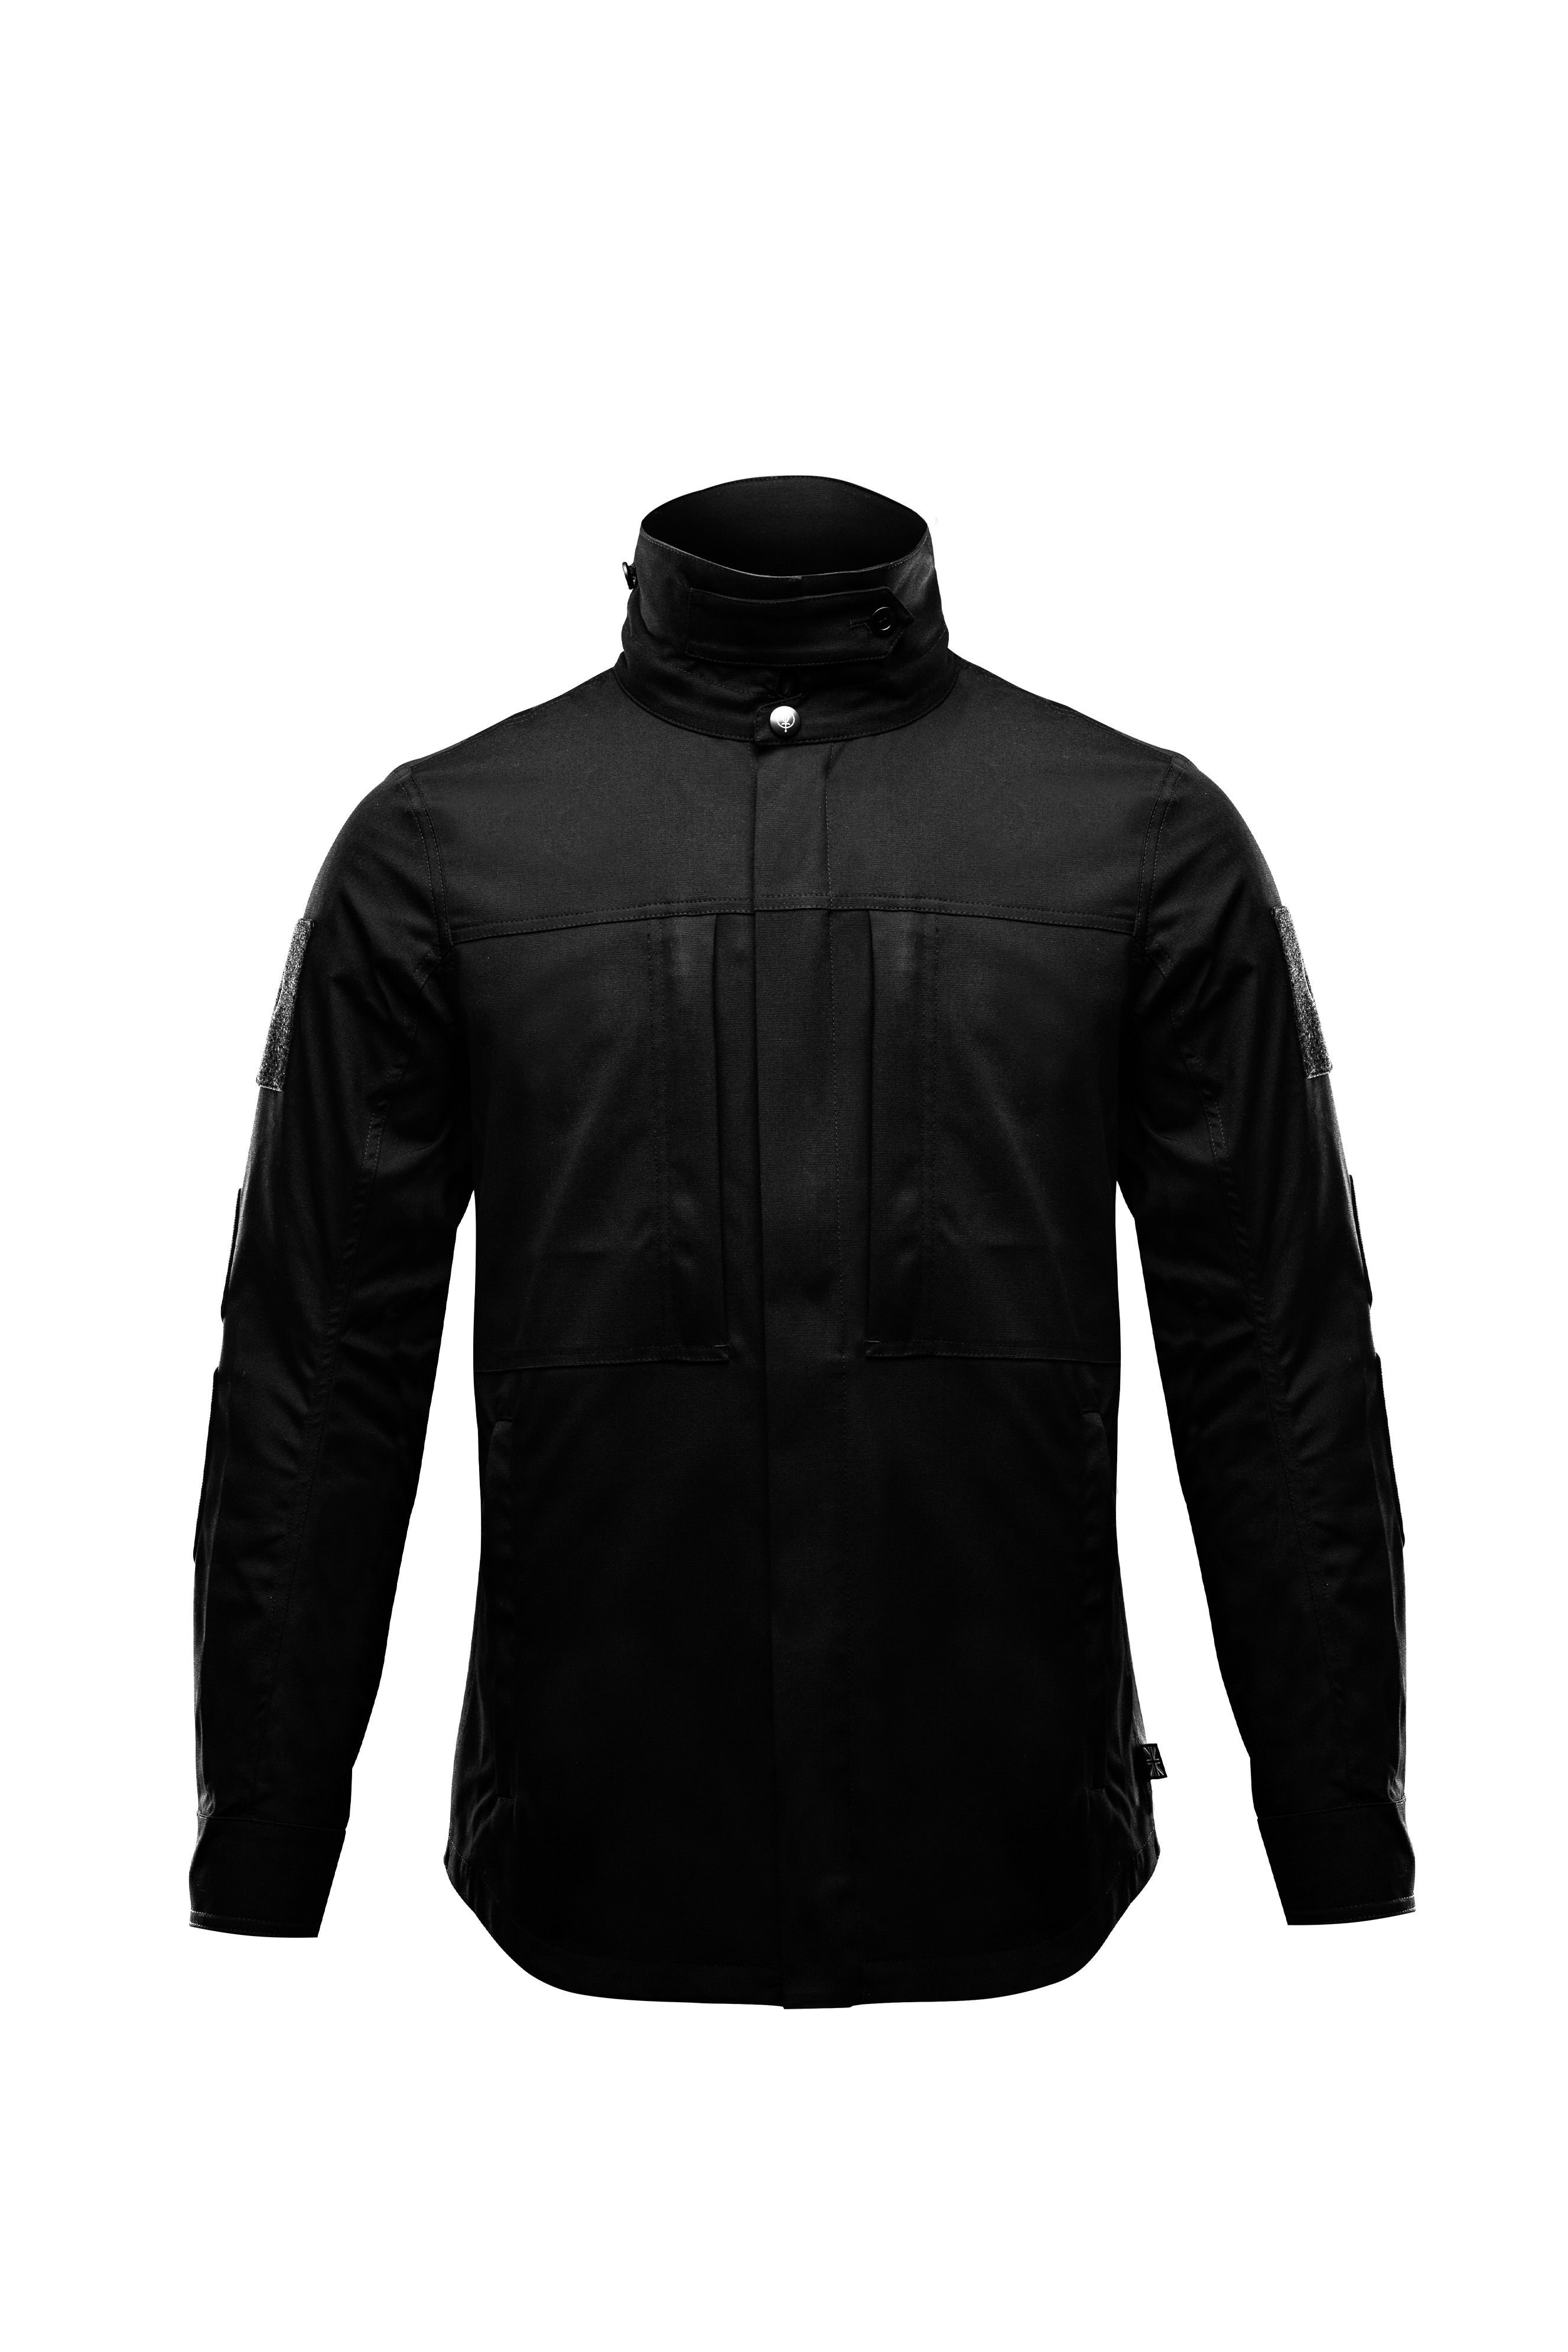 Hybrid Jacket  Mens Hybrid Jacket  Combat Shirt For HikingandWalk Xs